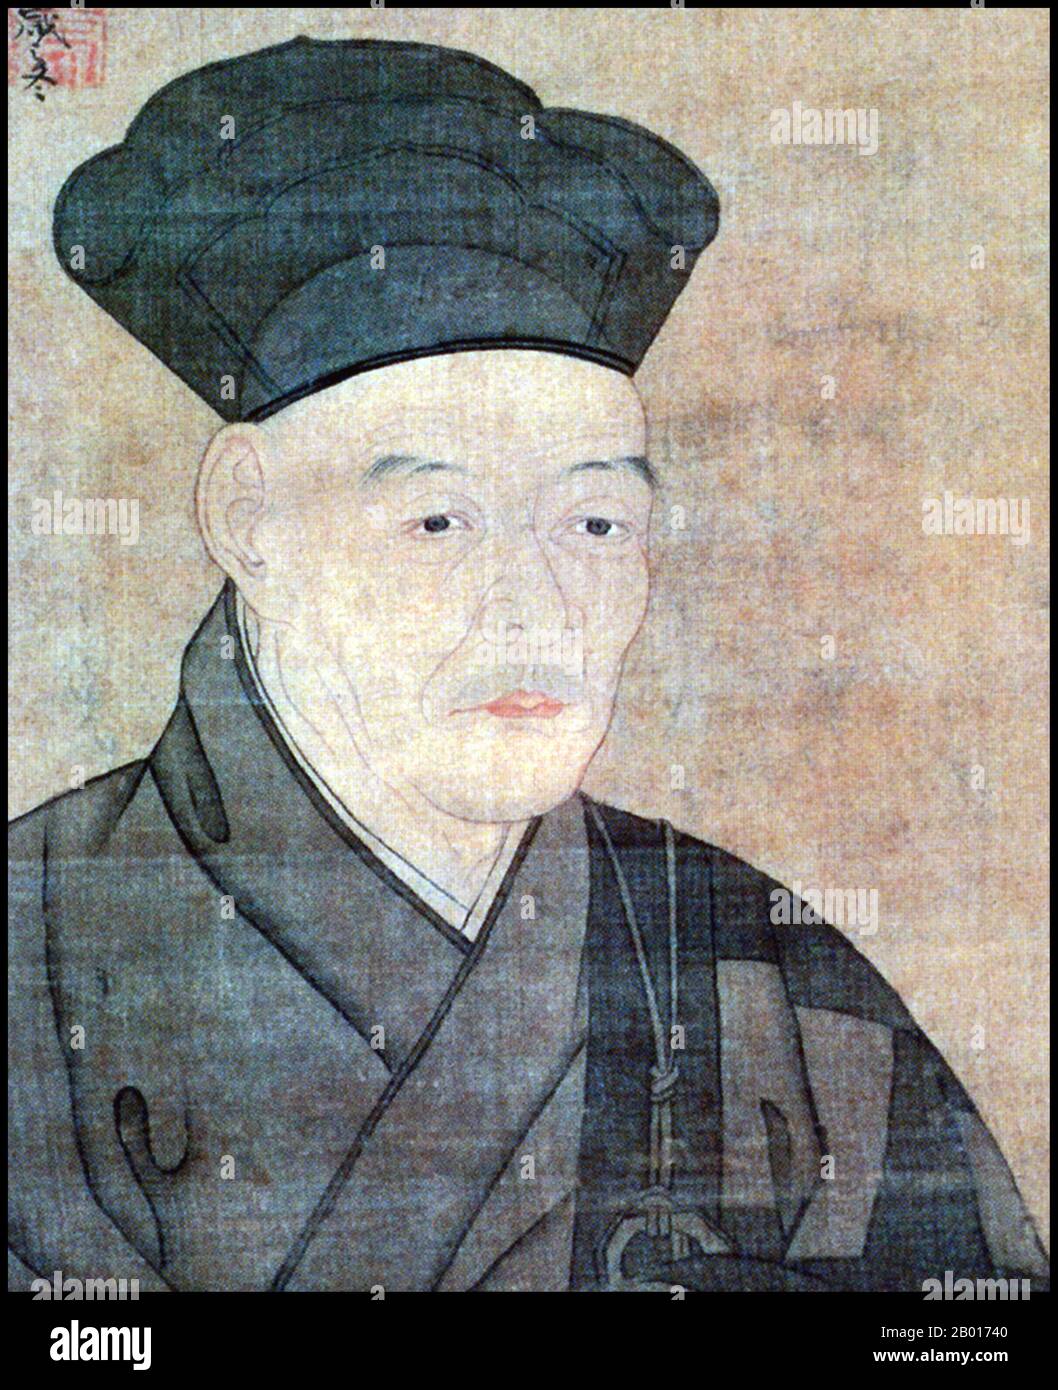 Giappone: Sesshu Toyo (1460 - 26 agosto 1506), pittore del periodo Muromachi. Copia di un autoritratto del 1491, XVI secolo. Sesshu Toyo, noto anche come Oda Toyo, Bikeisai e Unkoku, è stato il più importante maestro giapponese di pittura a inchiostro e lavaggio del periodo medio Muromachi. Nato nella famiglia dei samurai di Oda, fu educato a diventare un prete buddista di Rinzai Zen. Il suo talento per l'arte si rivelò tuttavia in giovane età, e alla fine divenne uno dei più grandi artisti giapponesi del suo tempo, ampiamente venerato in Giappone e Cina. Foto Stock